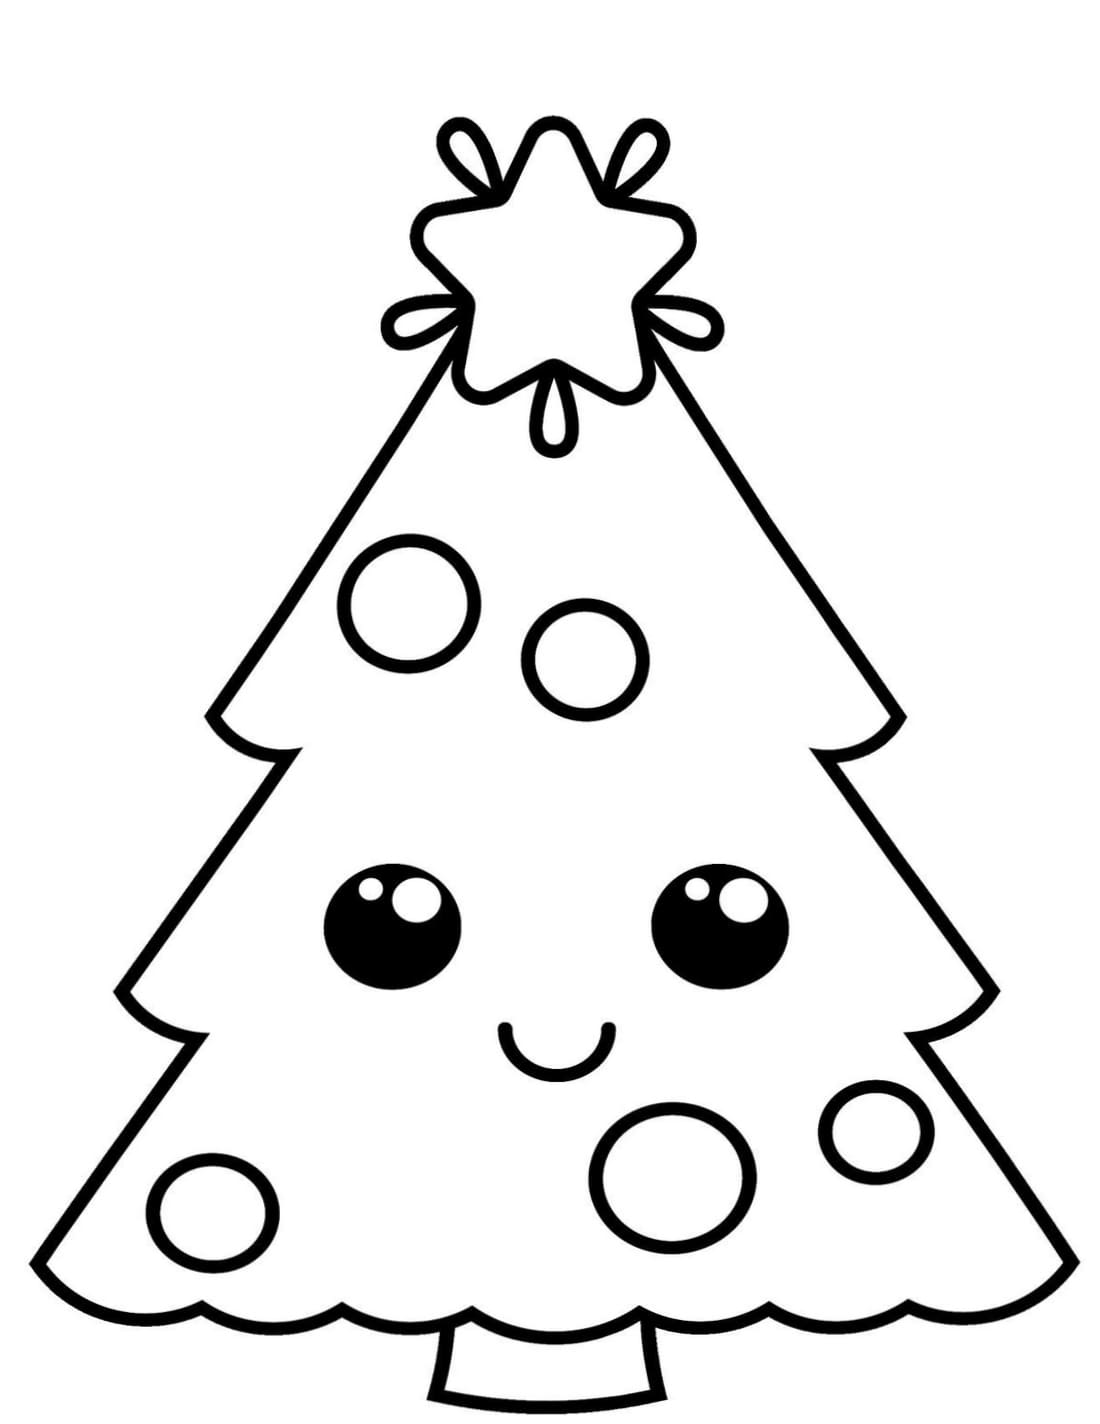 раскраска новогодняя елка картинки для детей распечатать 7